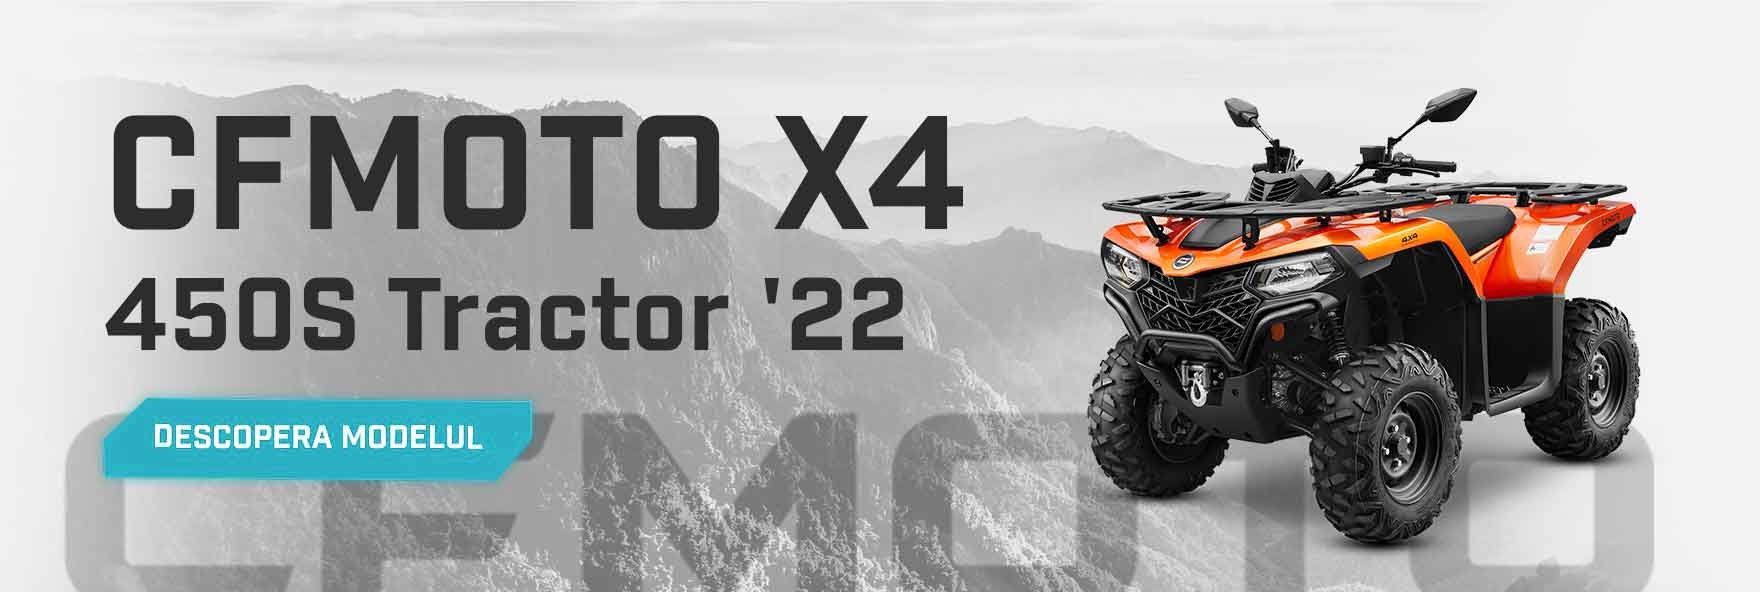 CFMOTO X4 CForce 450S Tractor '22